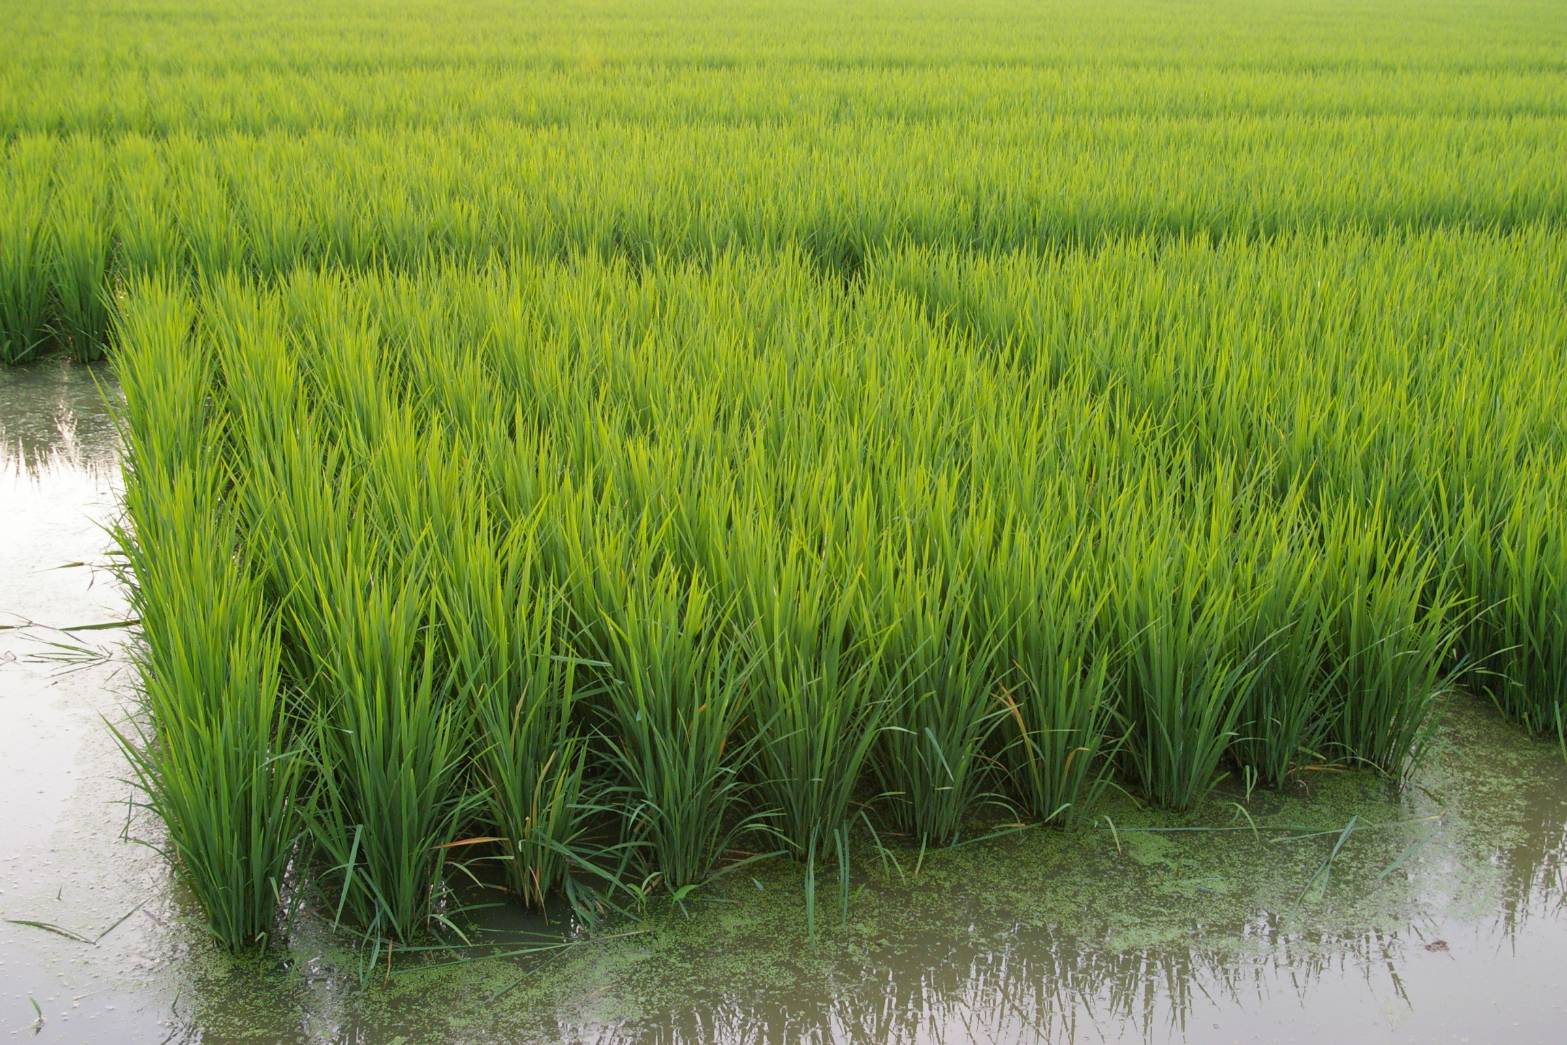 ผลักดันเกษตรอินทรีย์ไทย ยืนหนึ่งอาเซียน เดินหน้าแผนปฏิบัติการขยายพื้นที่เกษตรอินทรีย์ 1.3 ล้านไร่ ในปี 65